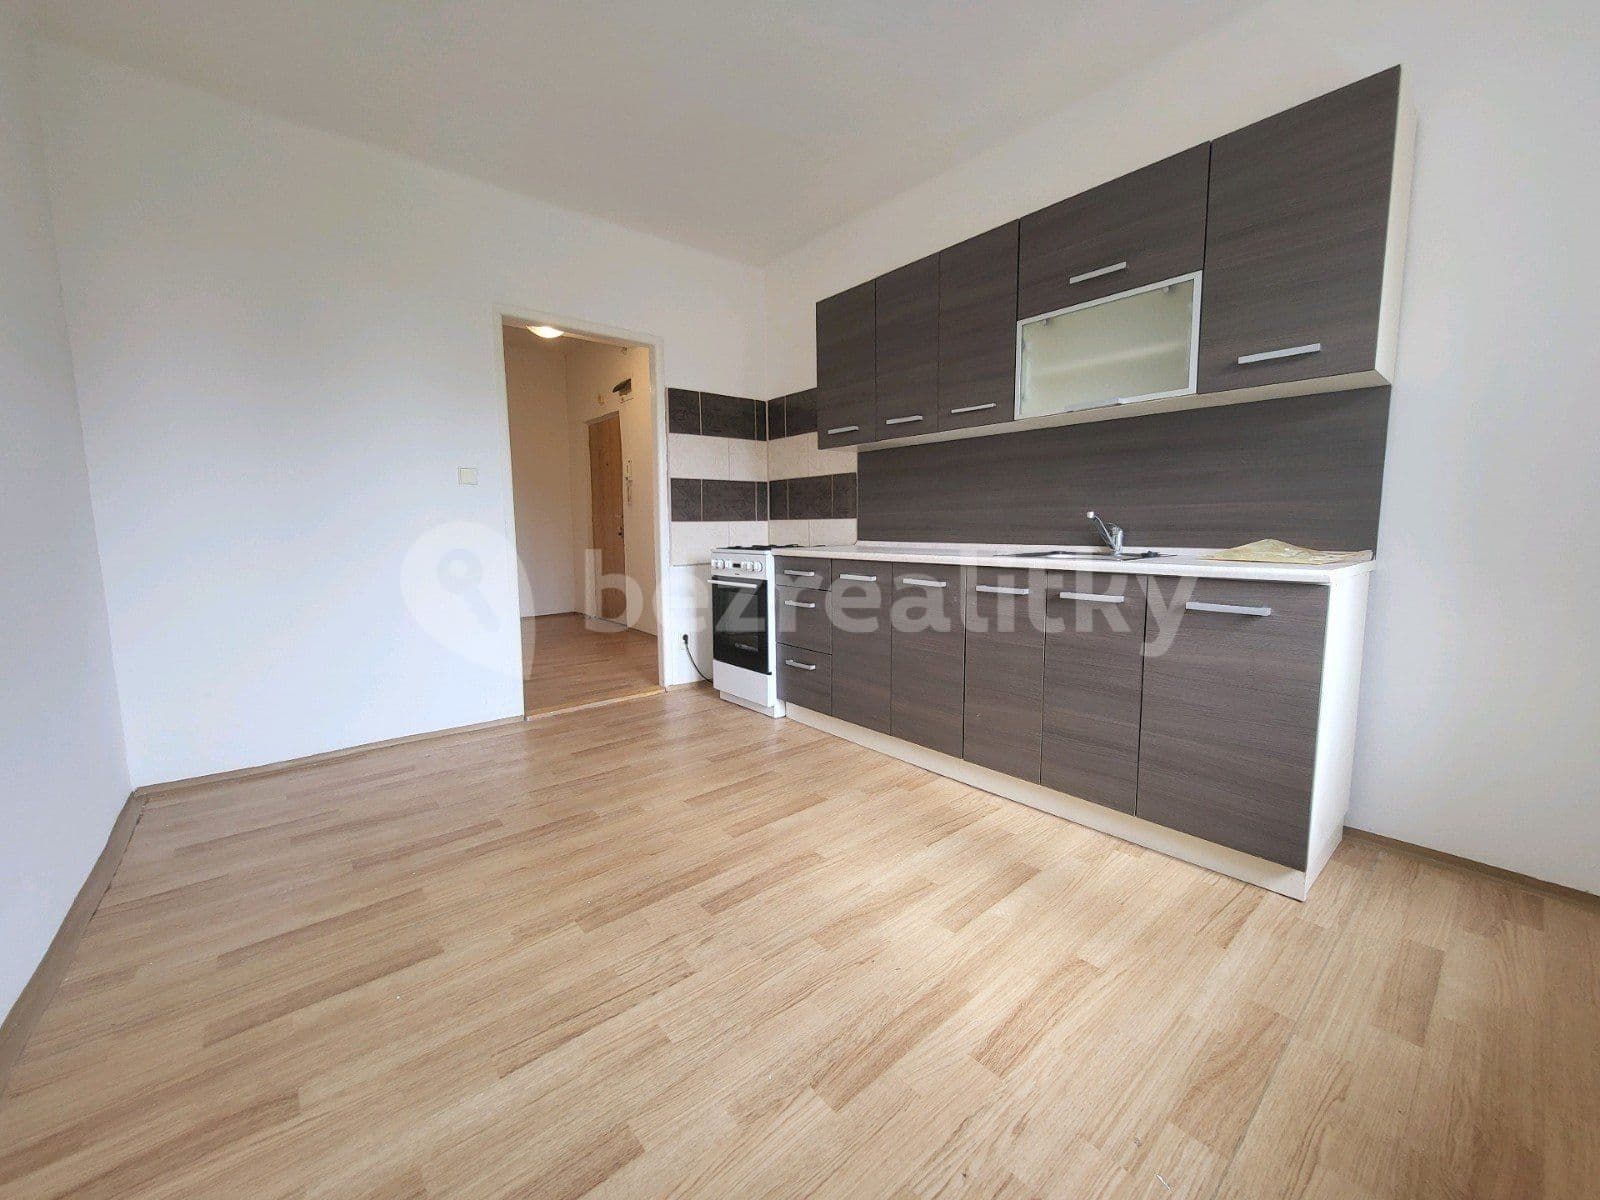 3 bedroom flat to rent, 80 m², nám. T. G. Masaryka, Havířov, Moravskoslezský Region